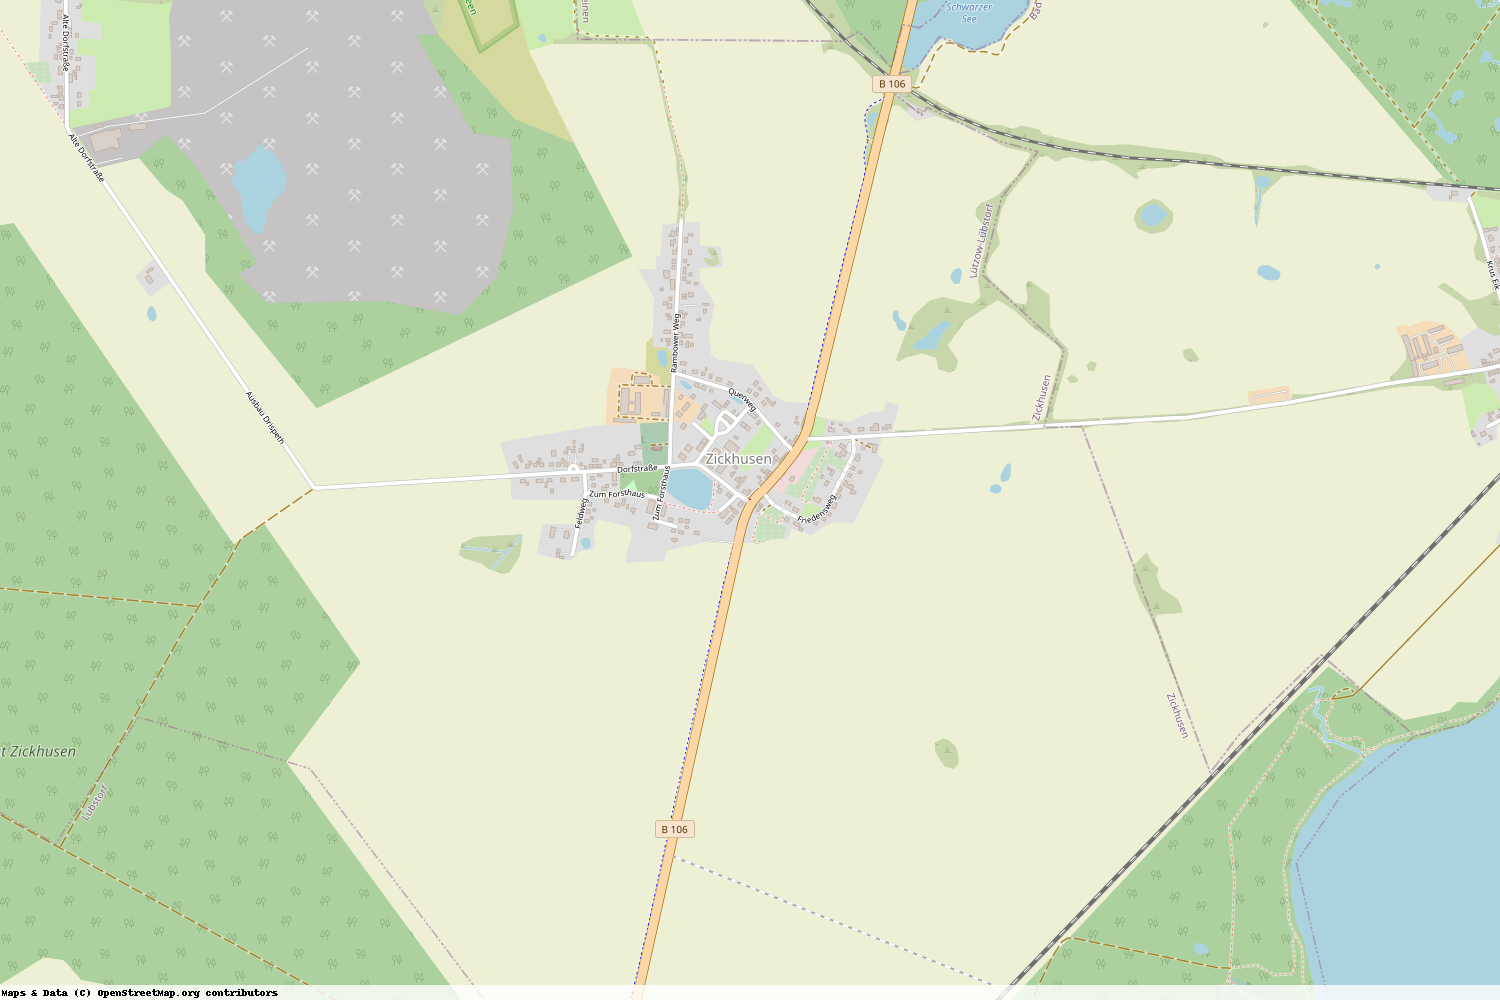 Ist gerade Stromausfall in Mecklenburg-Vorpommern - Nordwestmecklenburg - Zickhusen?